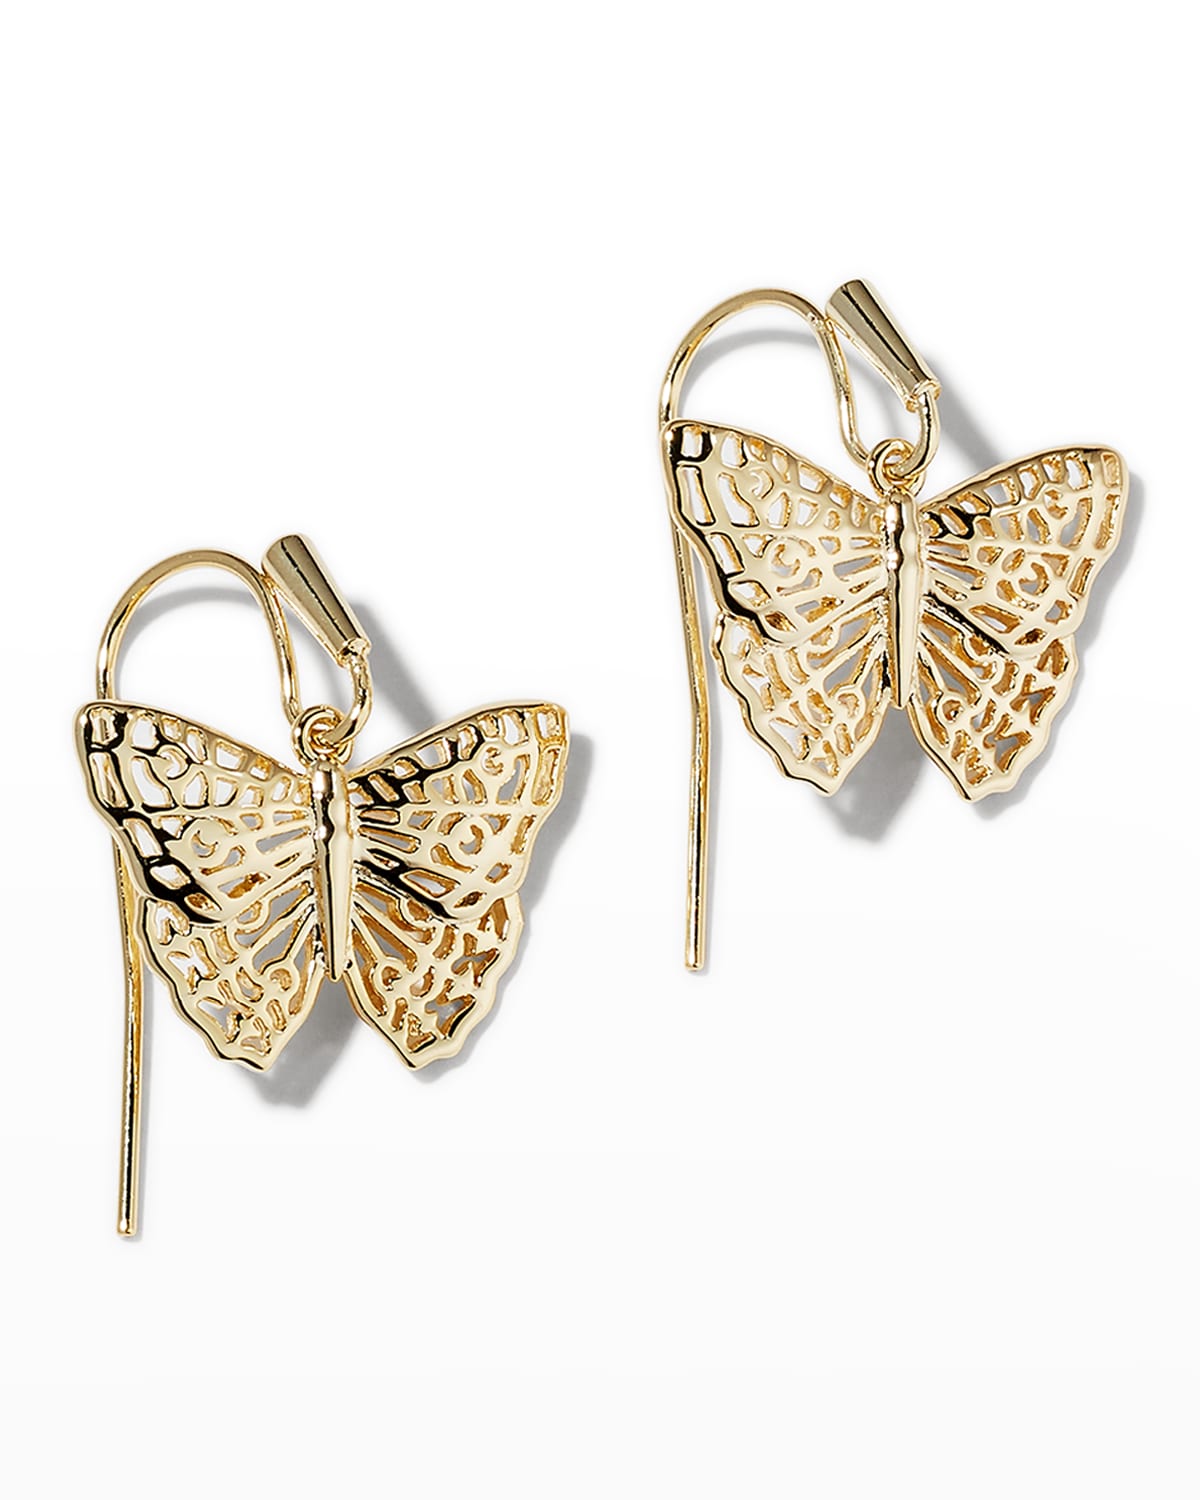 14K Yellow Gold Butterfly Earrings 0.31 in x 0.43 in